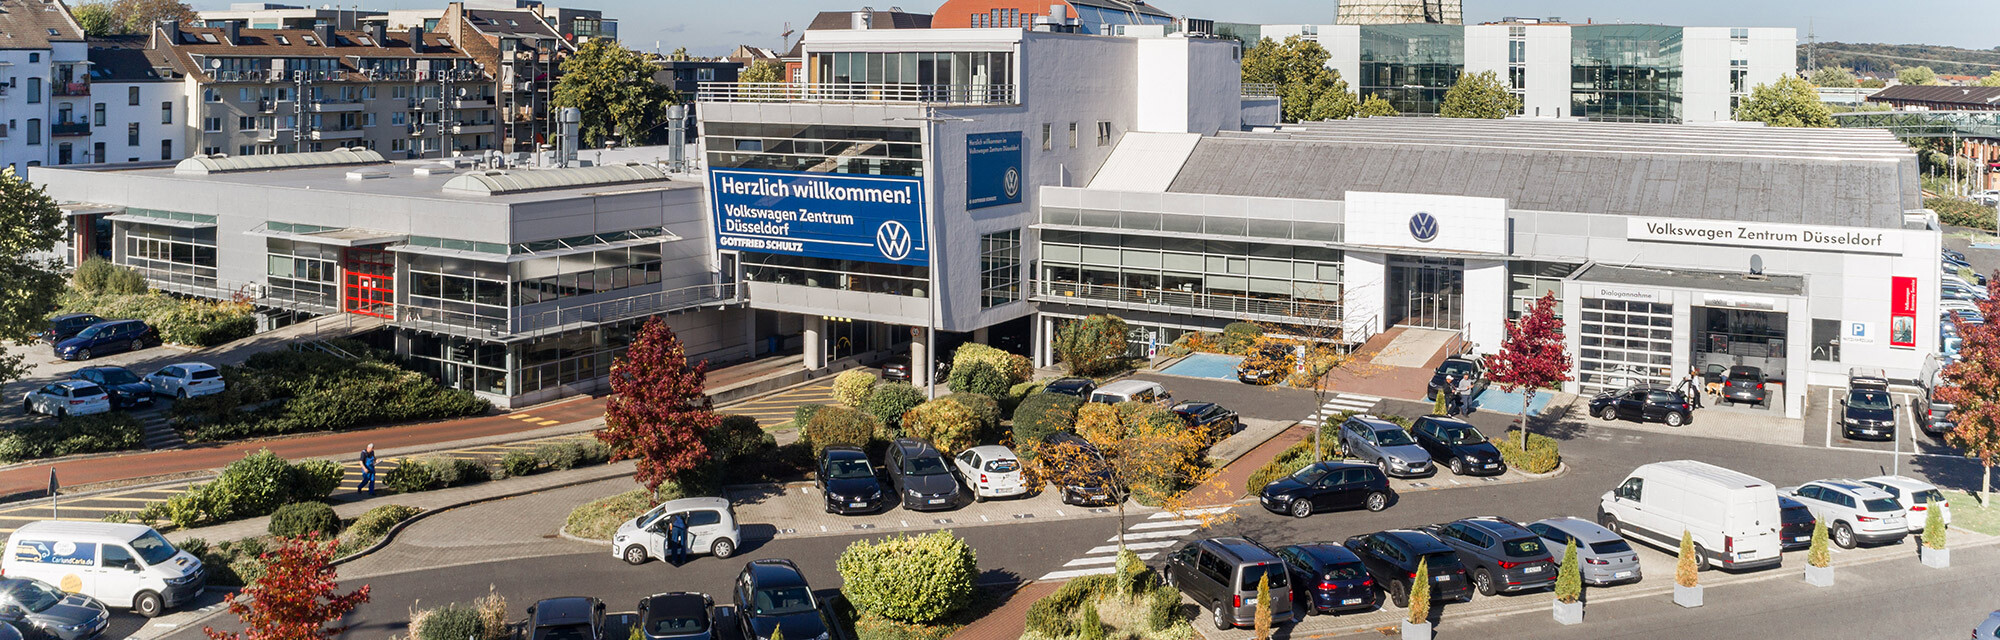 Volkswagen Zentrum Düsseldorf